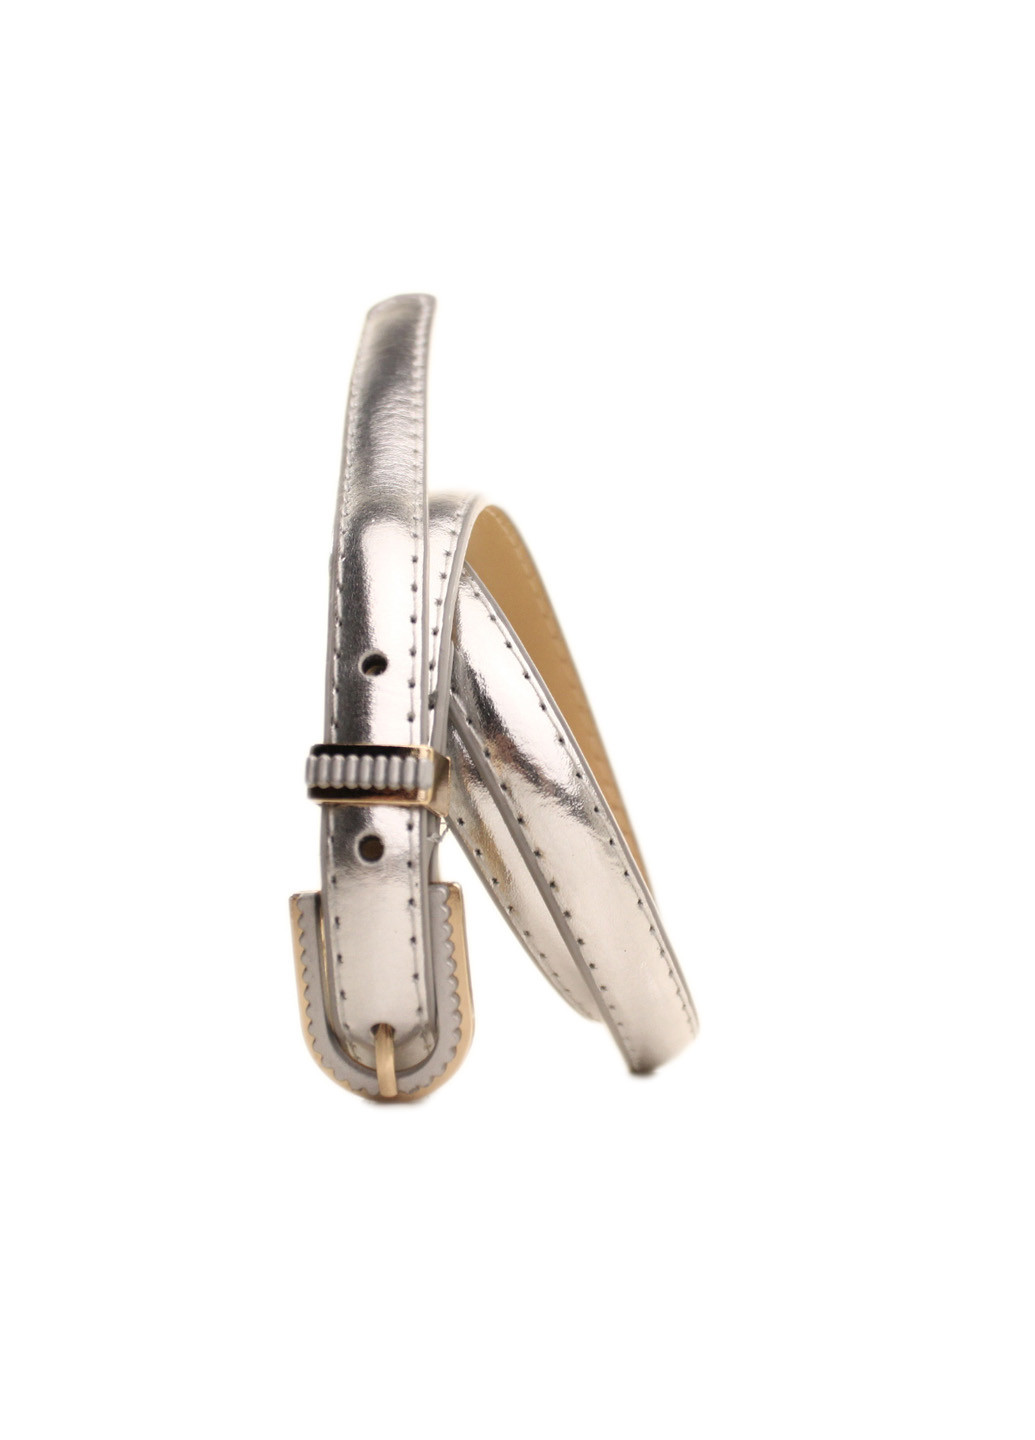 Ремень серебристый L1510W51 105-110 см Casa Familia серебряный экокожа